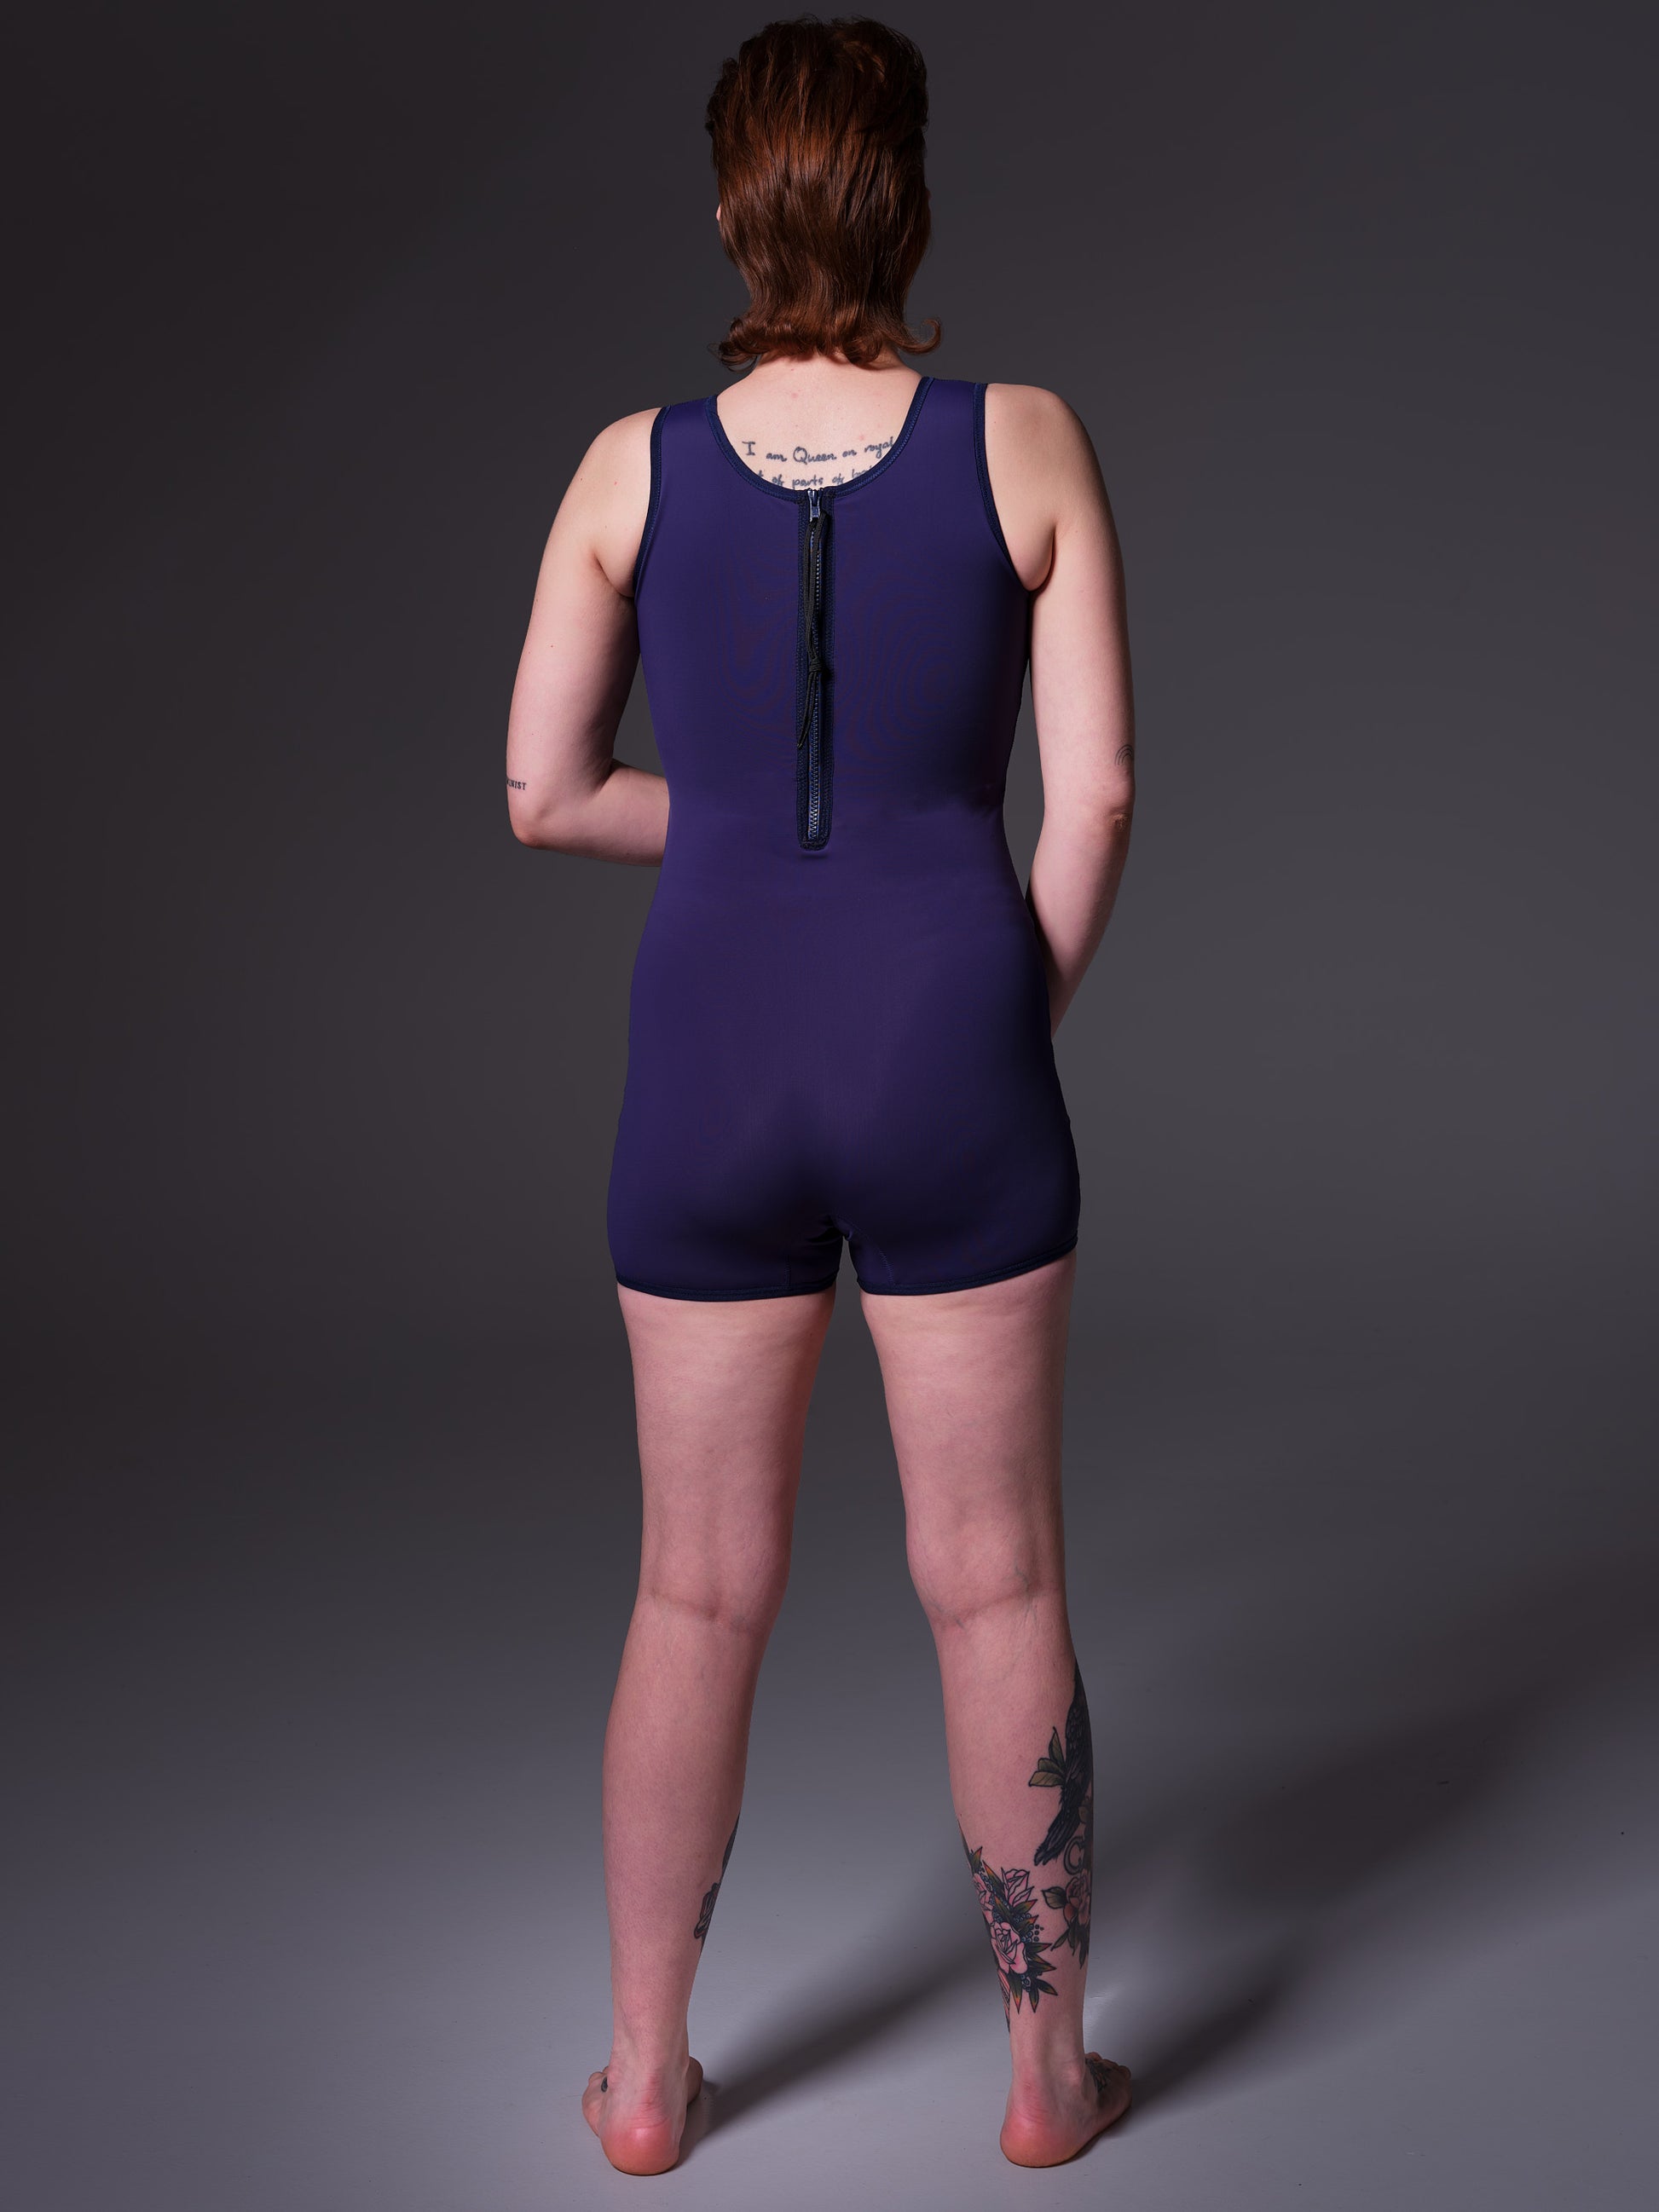 Swimsuit Binder dark blue, back view on model Lene